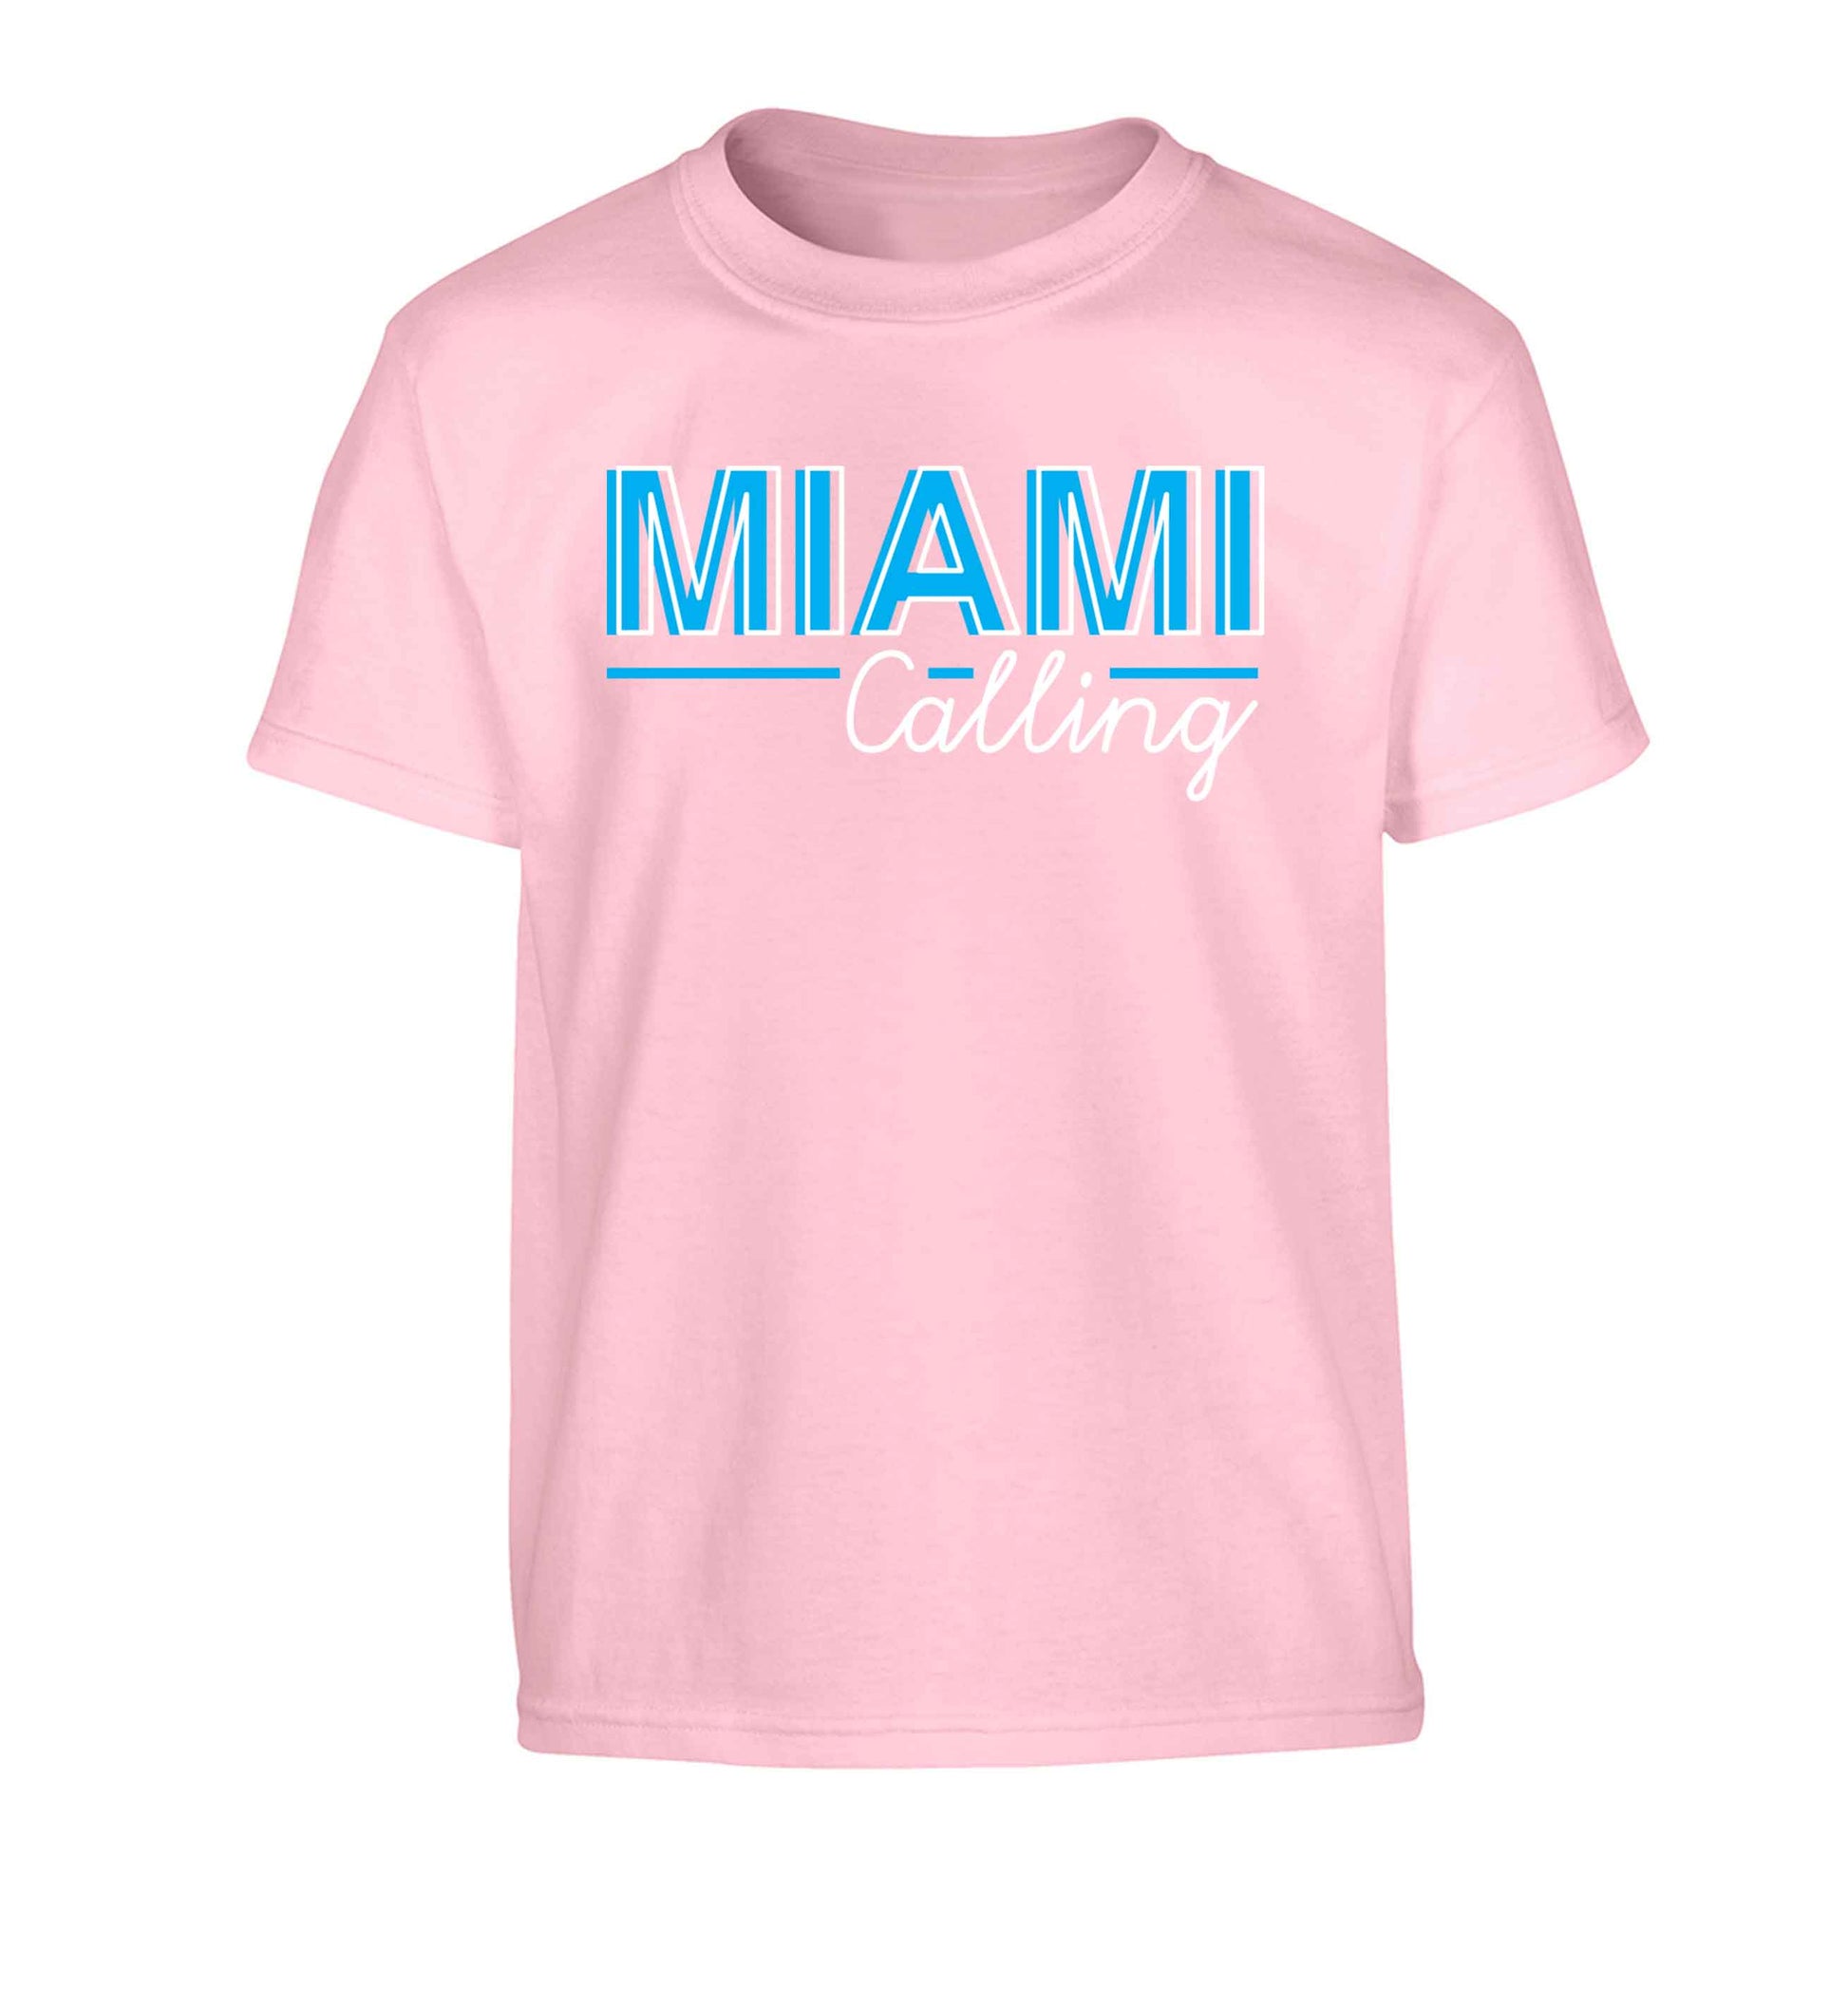 Miami calling Children's light pink Tshirt 12-13 Years